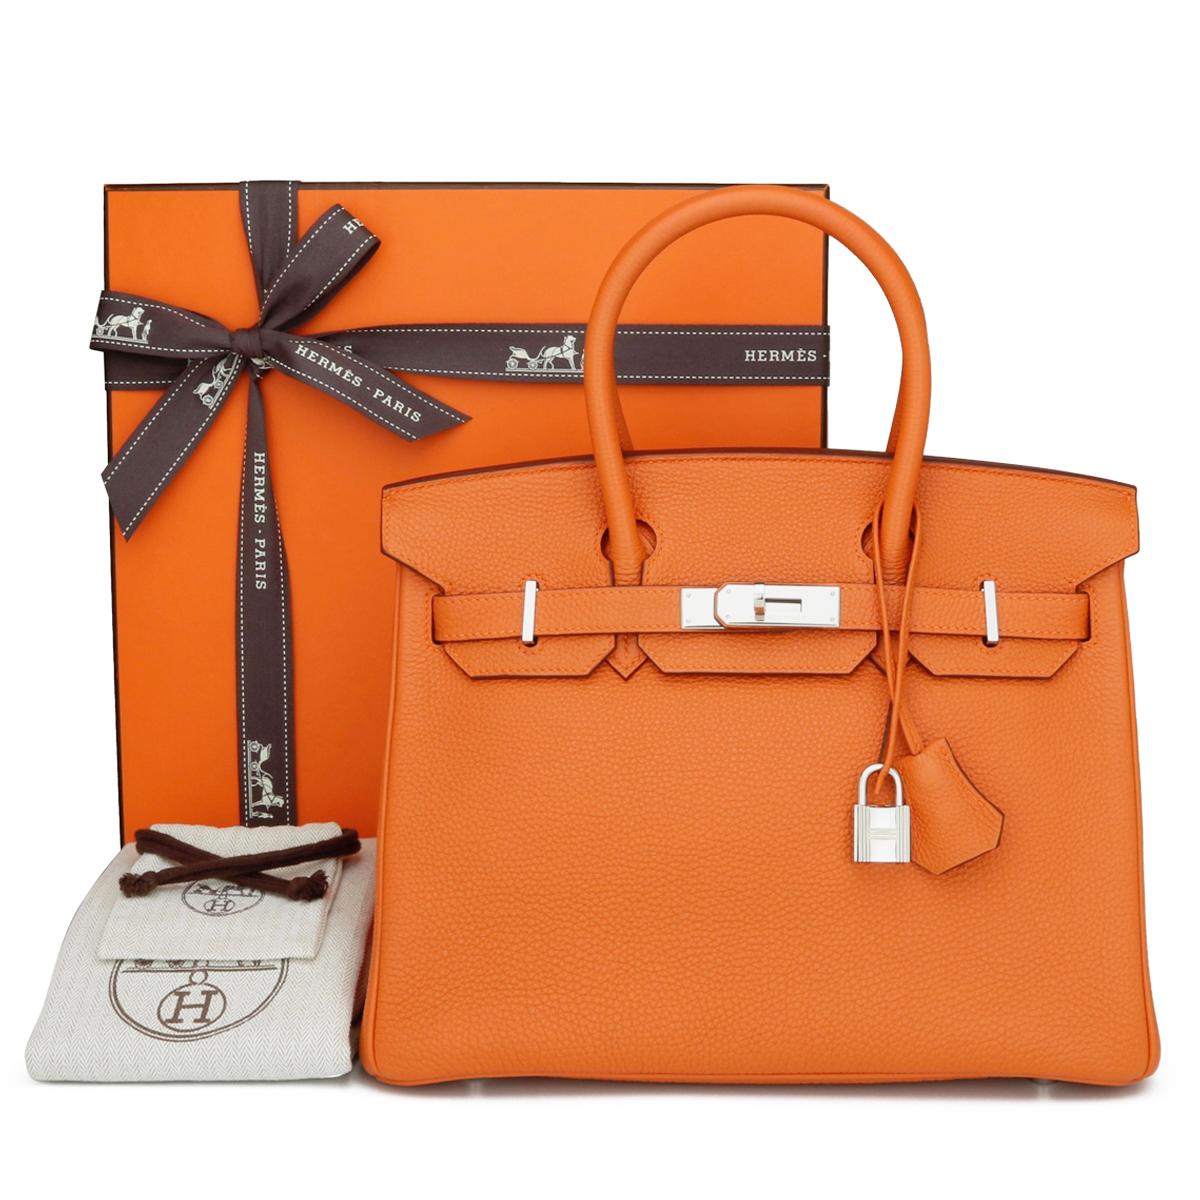 Hermès Birkin Bag 30cm Classic Orange Togo Leder mit Palladium Hardware Stempel M_Jahr 2009.

Diese Tasche ist immer noch in ausgezeichnetem Zustand. Das Leder riecht noch frisch und hat seine ursprüngliche Form behalten. Die Hardware ist immer noch